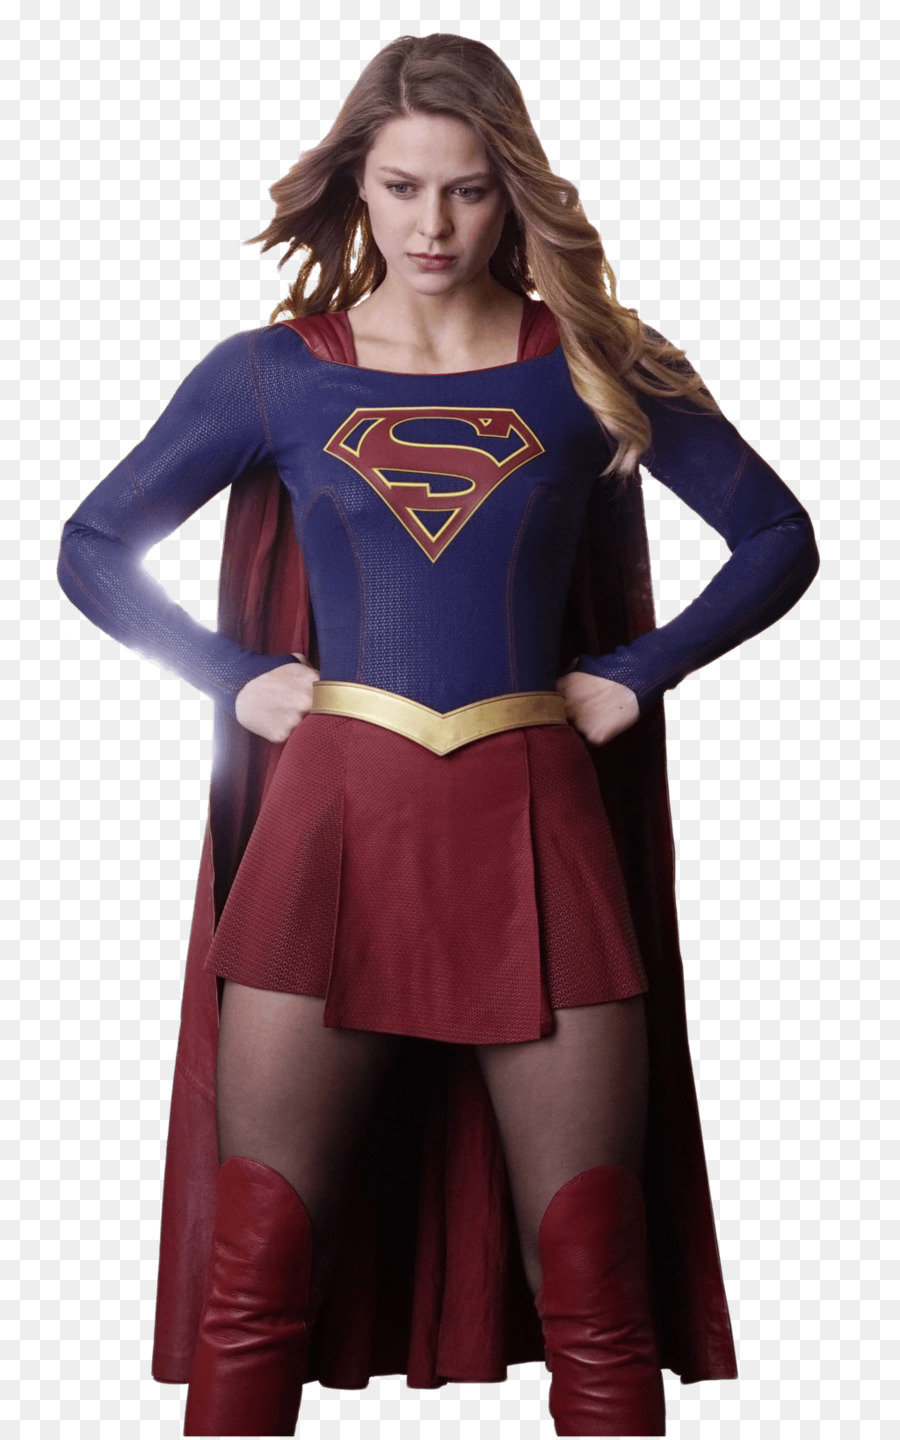 Melissa Benoist Supergirl Toyman Clip art - supergirl png download - 1024*1636 - Free Transparent Melissa Benoist png Download.